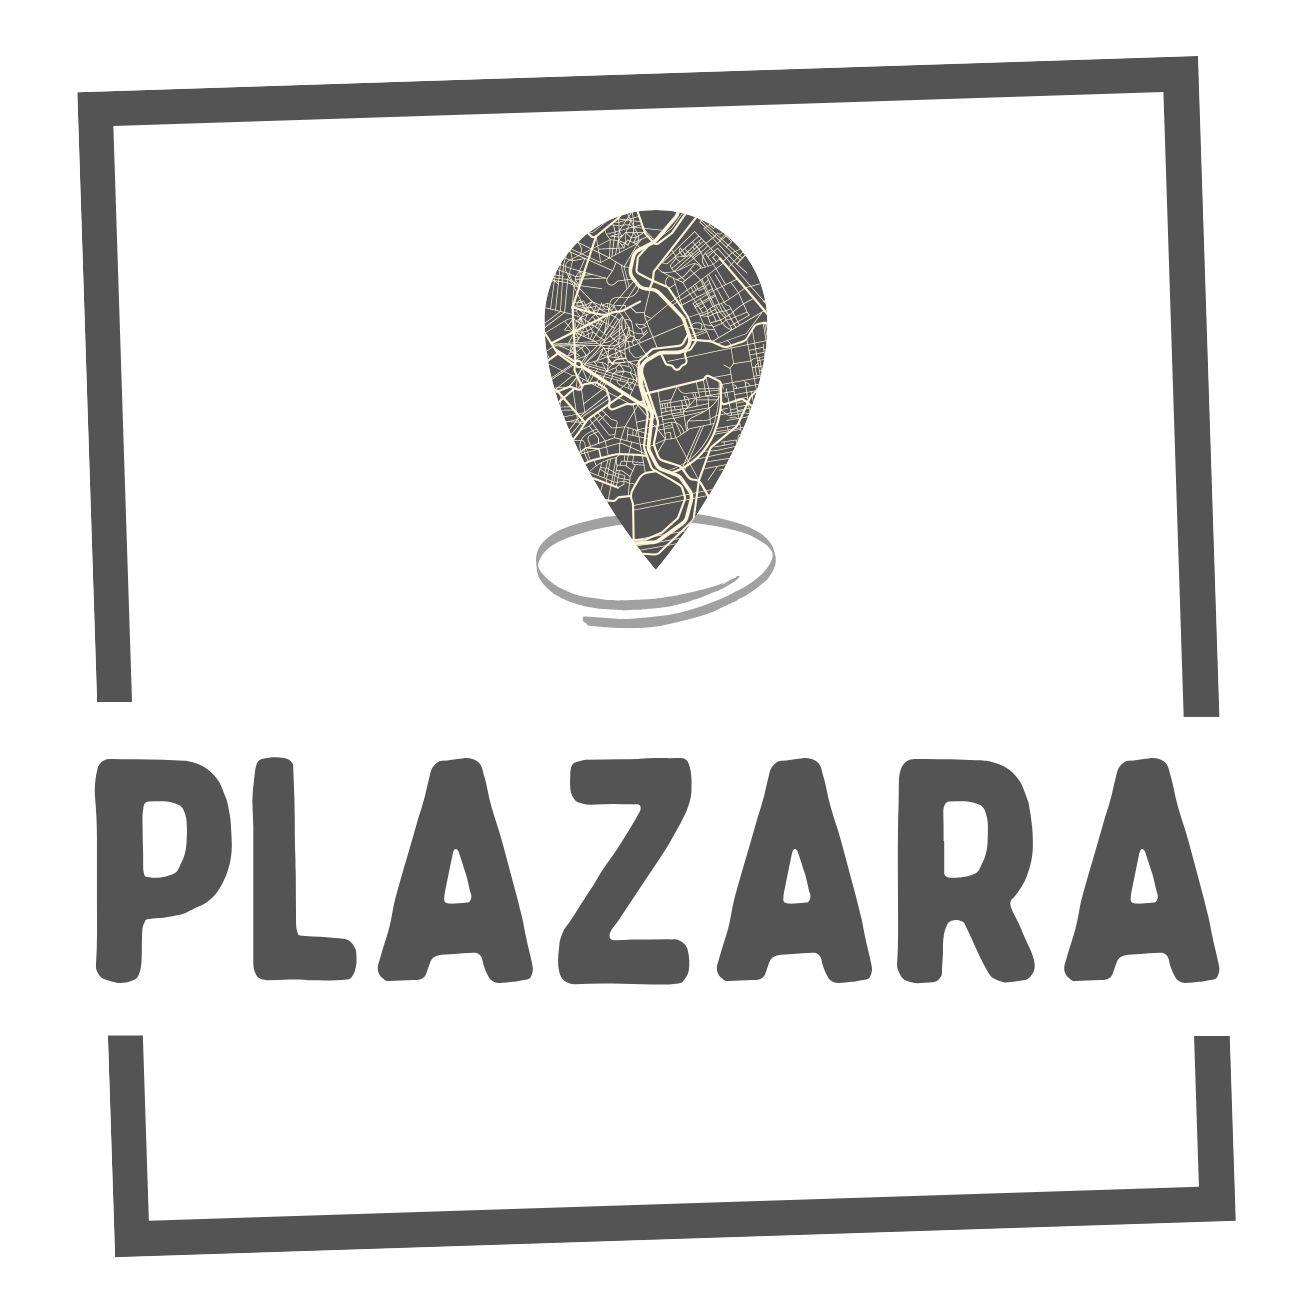 Plazara